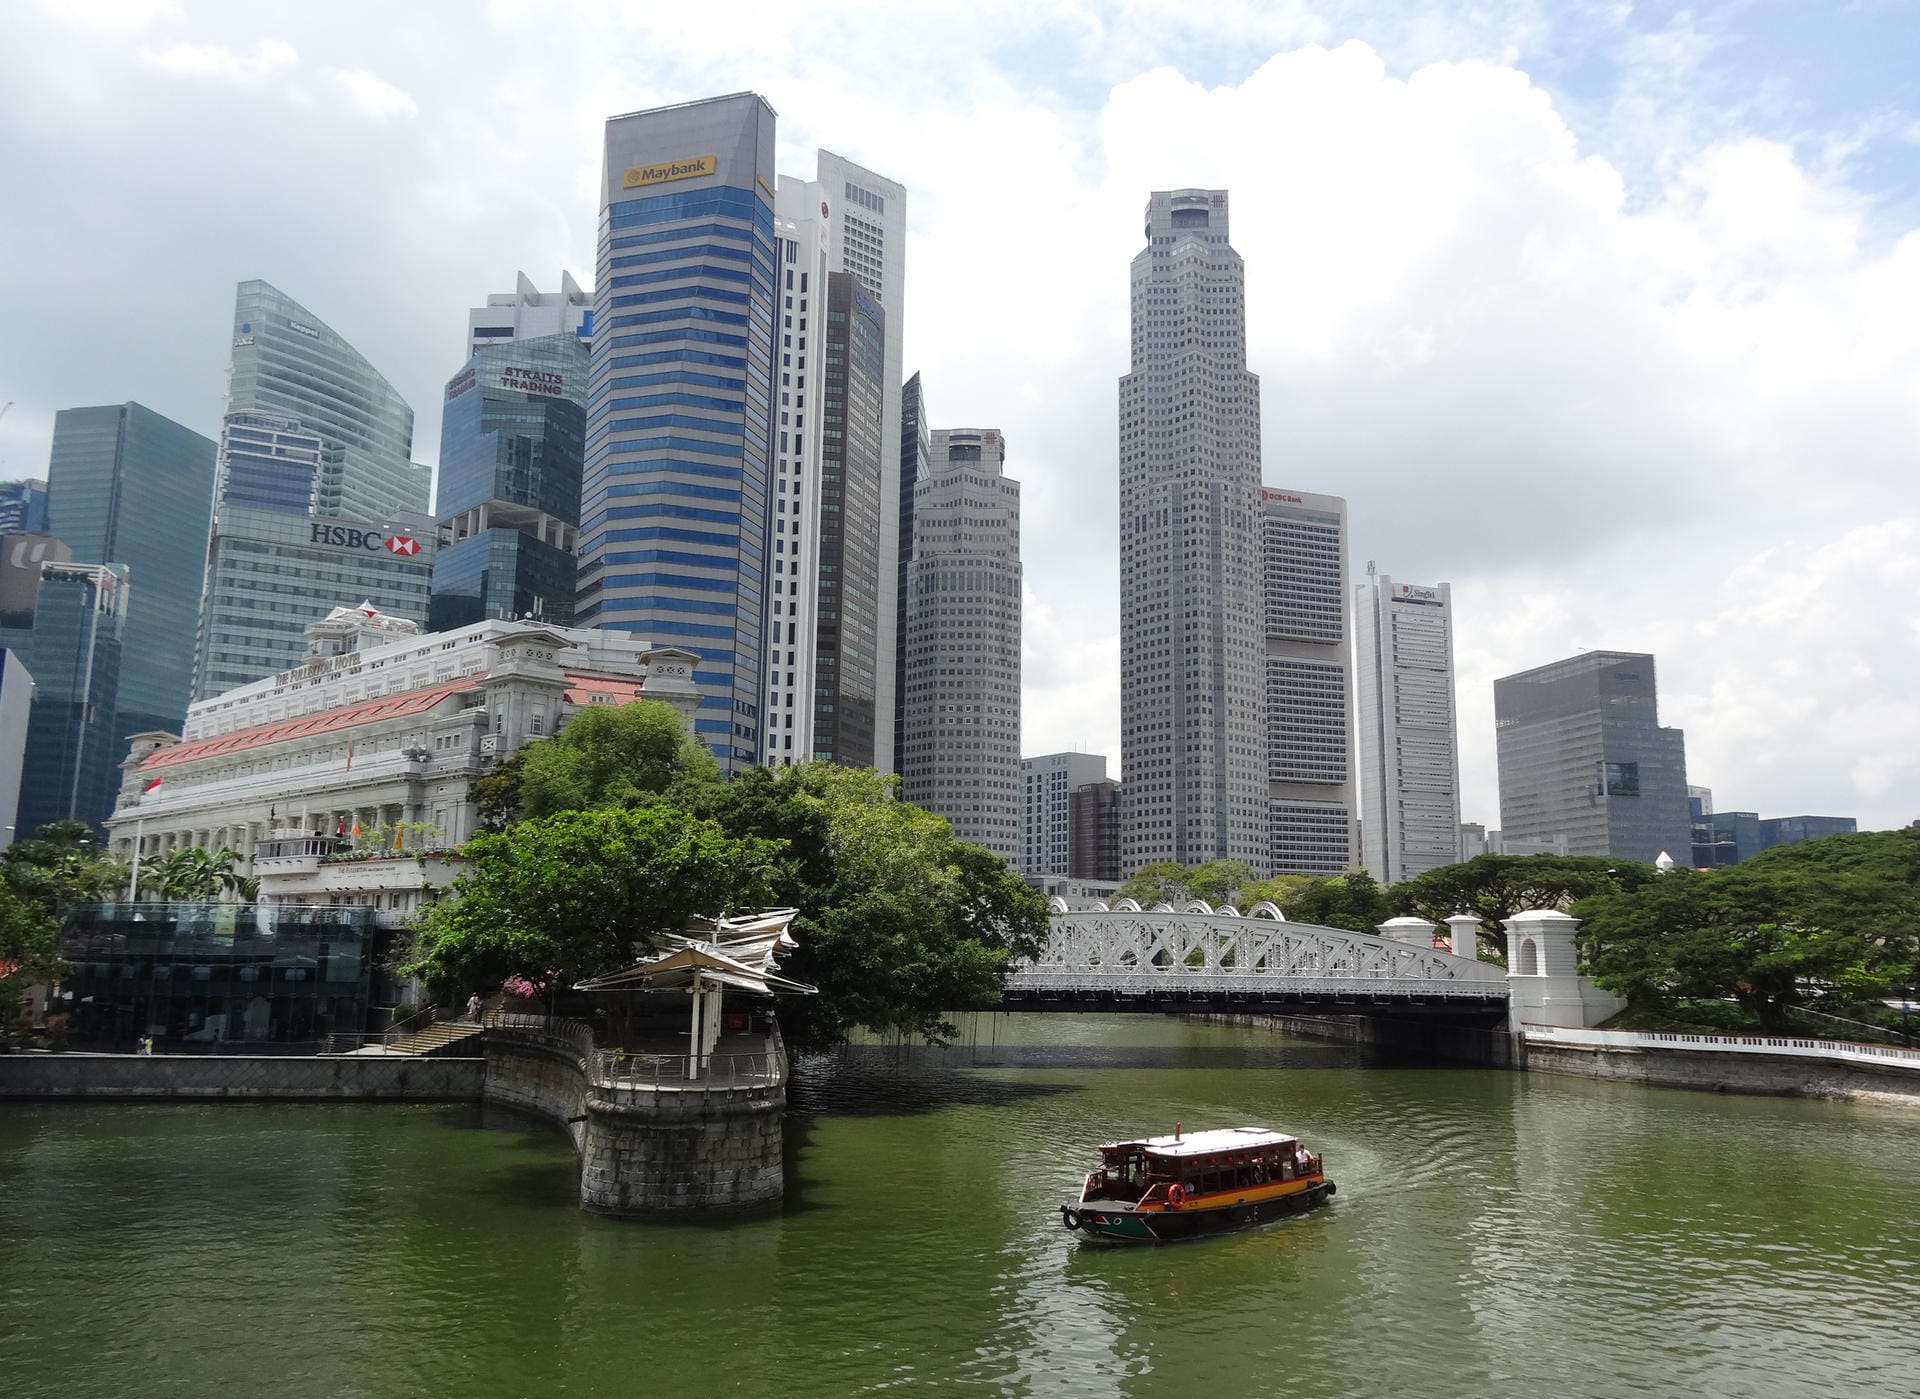 Singapur ist eine moderne, ansehnliche Stadt – Verschmutzungen werden dort nicht toleriert und entsprechend mit hohen Geldbußen belegt.